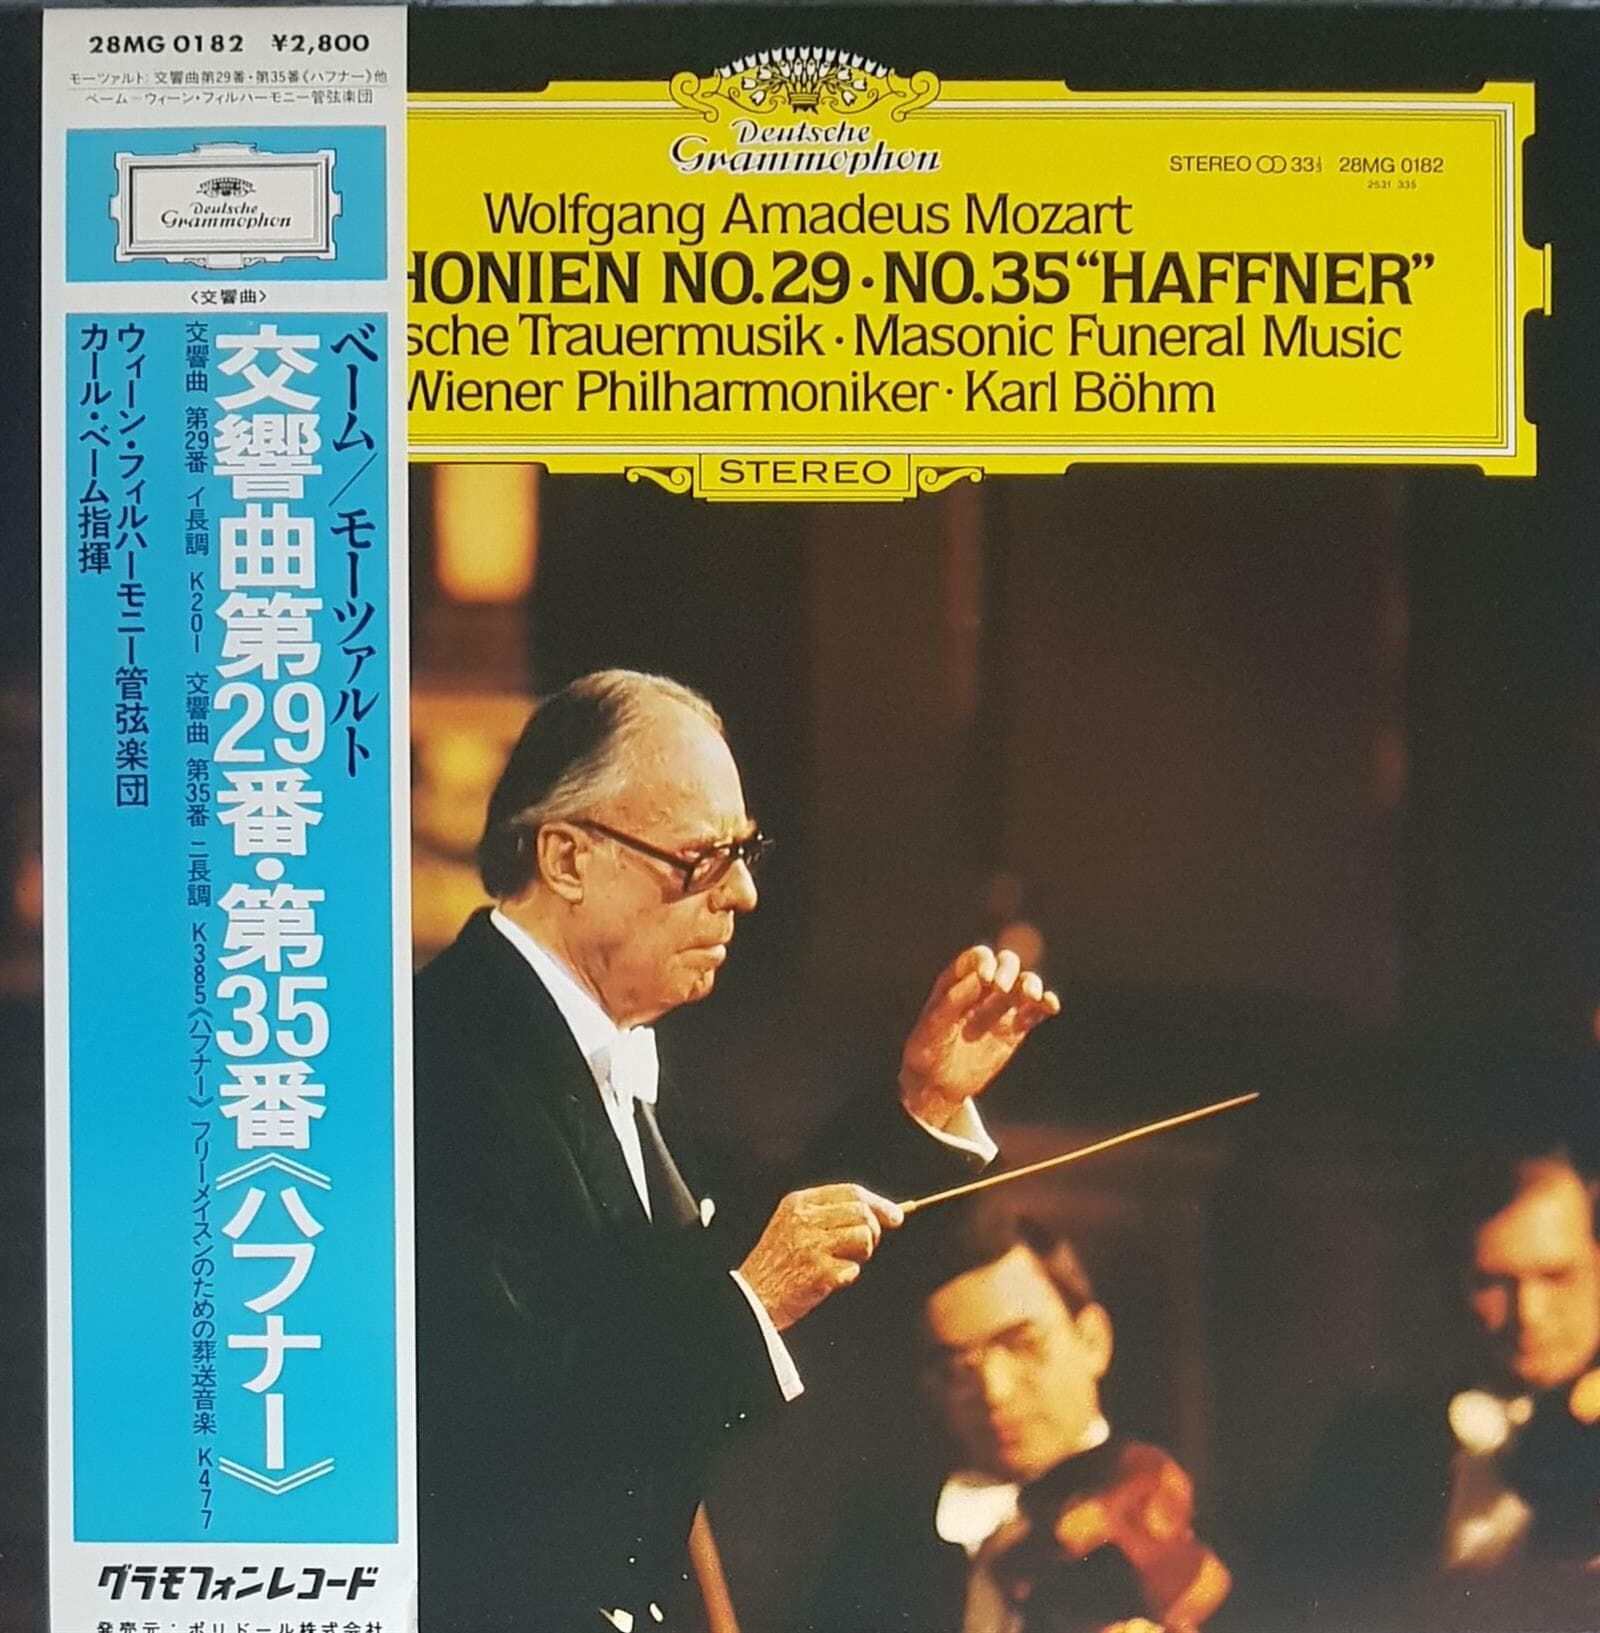 [일본반][LP] Karl Bohm, Wiener Philharmoniker - Mozart: Symphonien No. 29 No. 35 “Haffner”